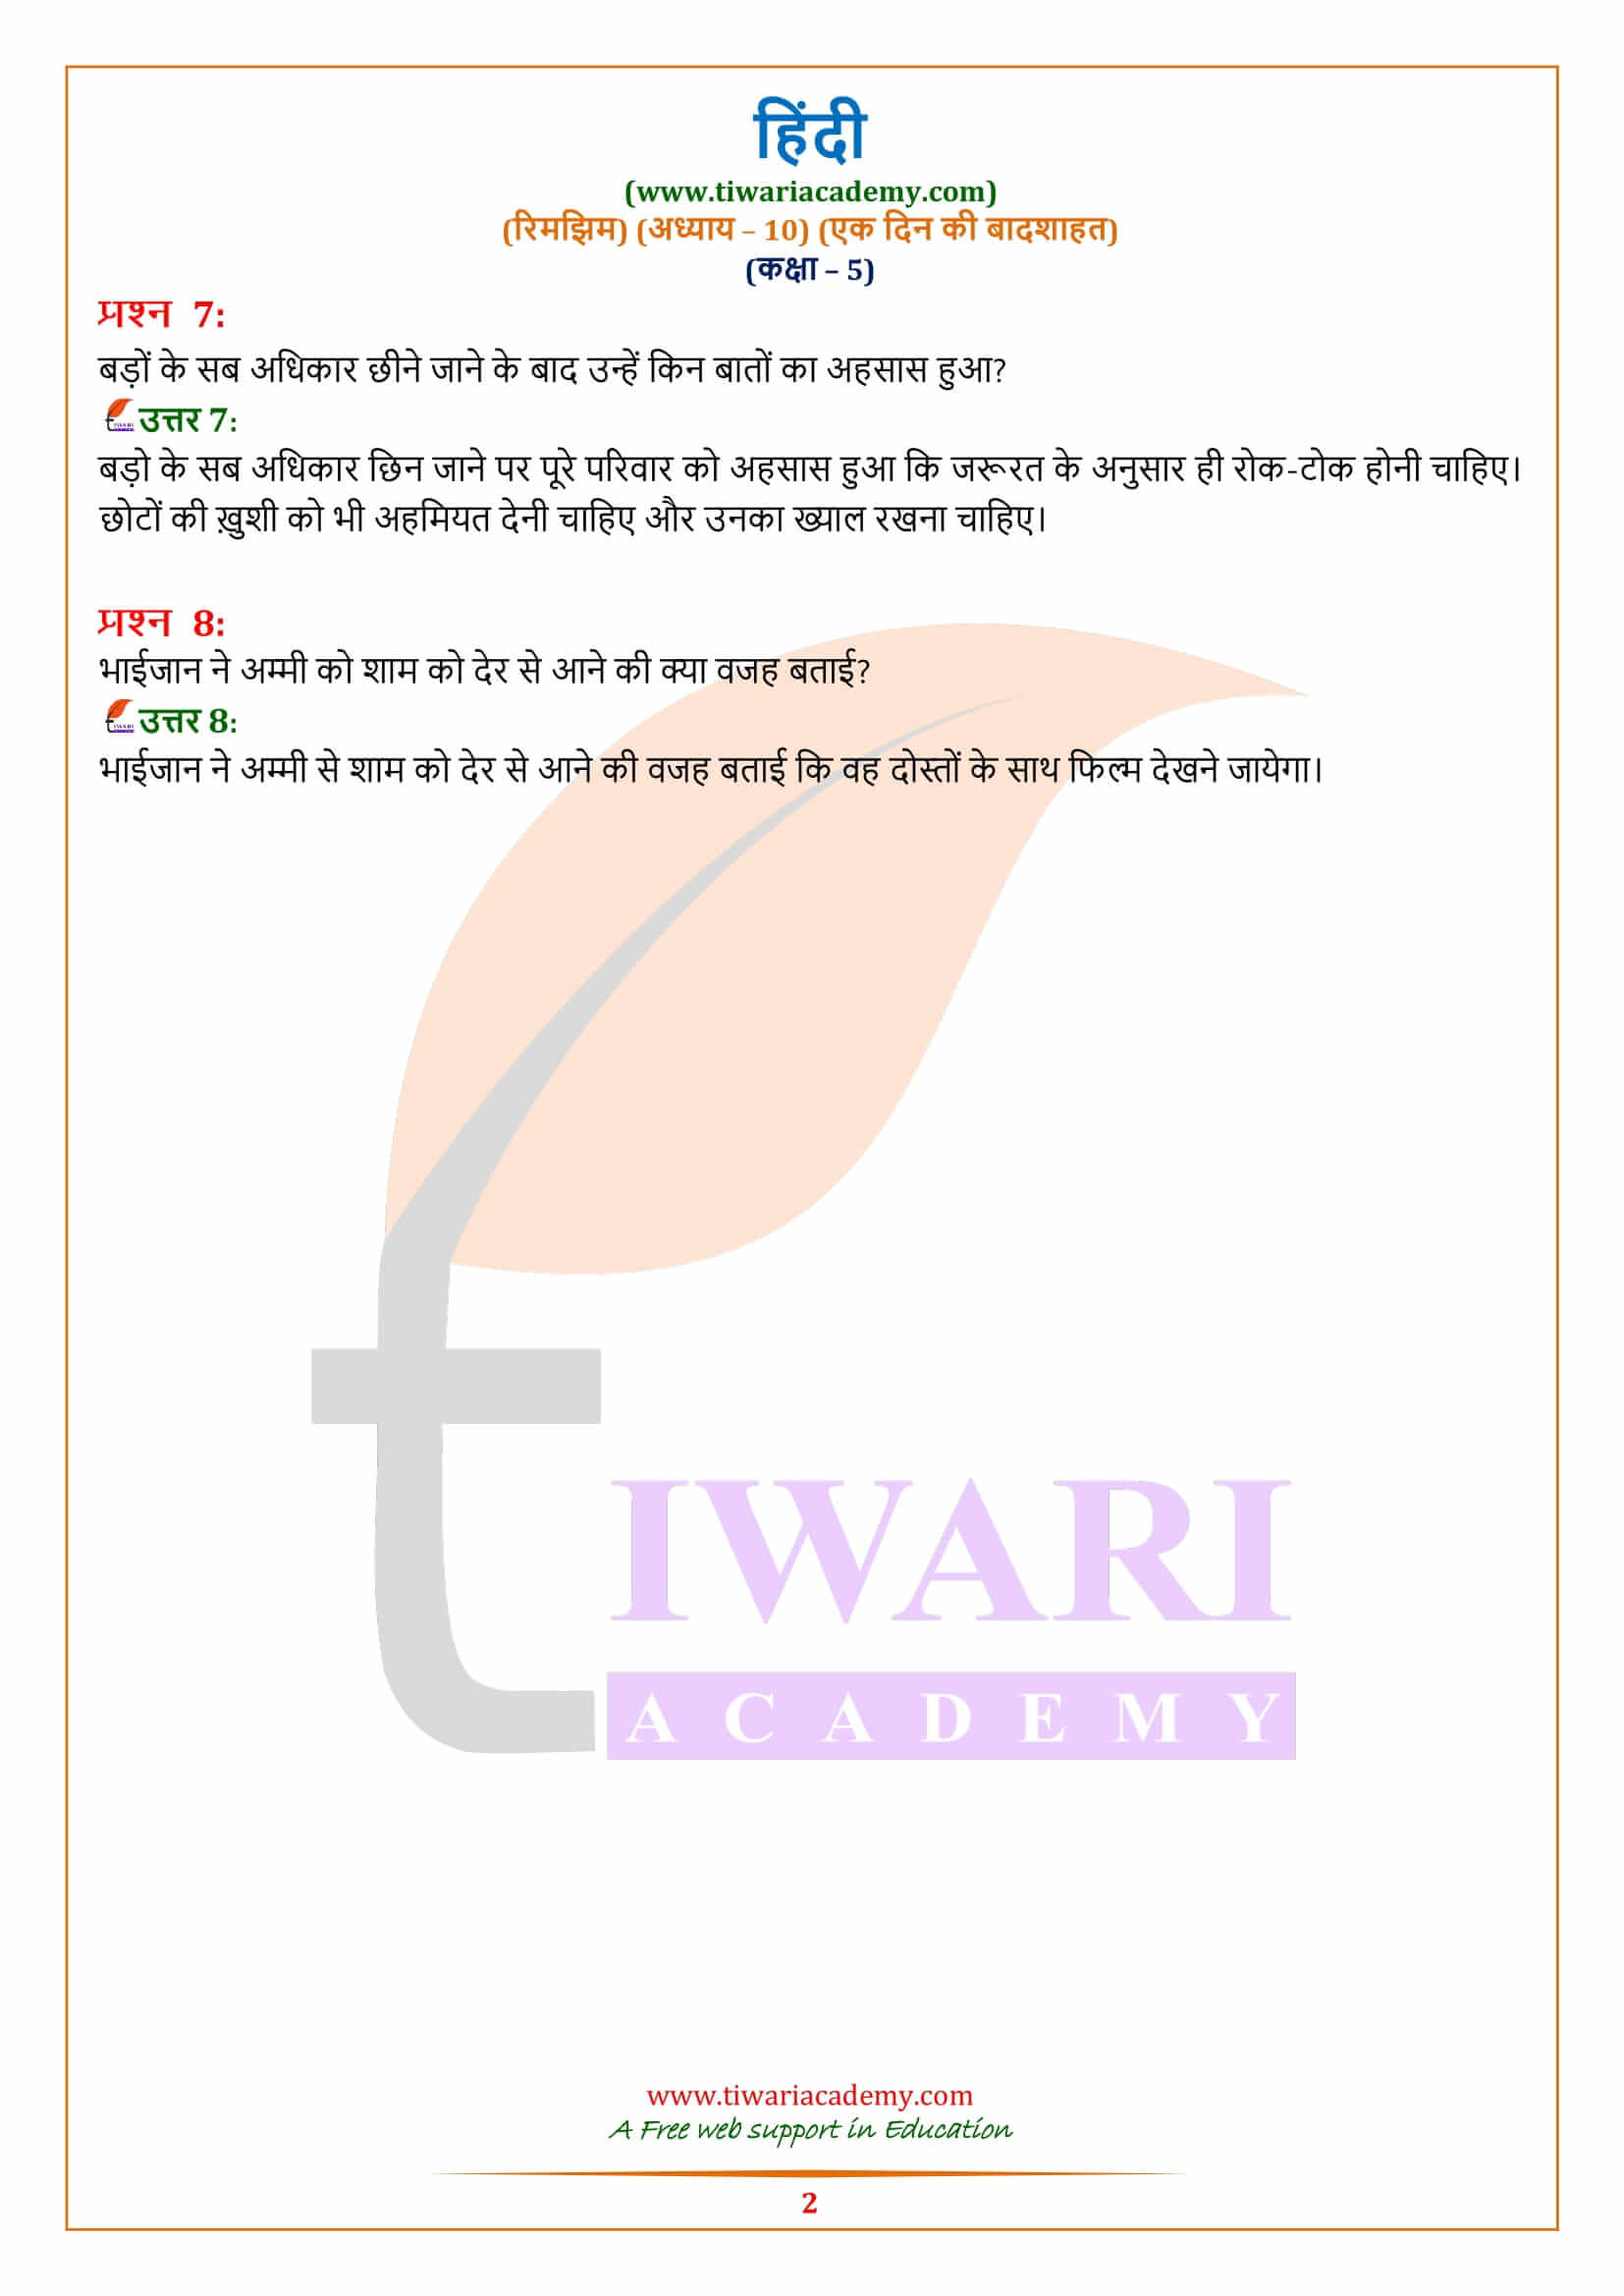 कक्षा 5 हिंदी अध्याय 10 के प्रश्न उत्तर